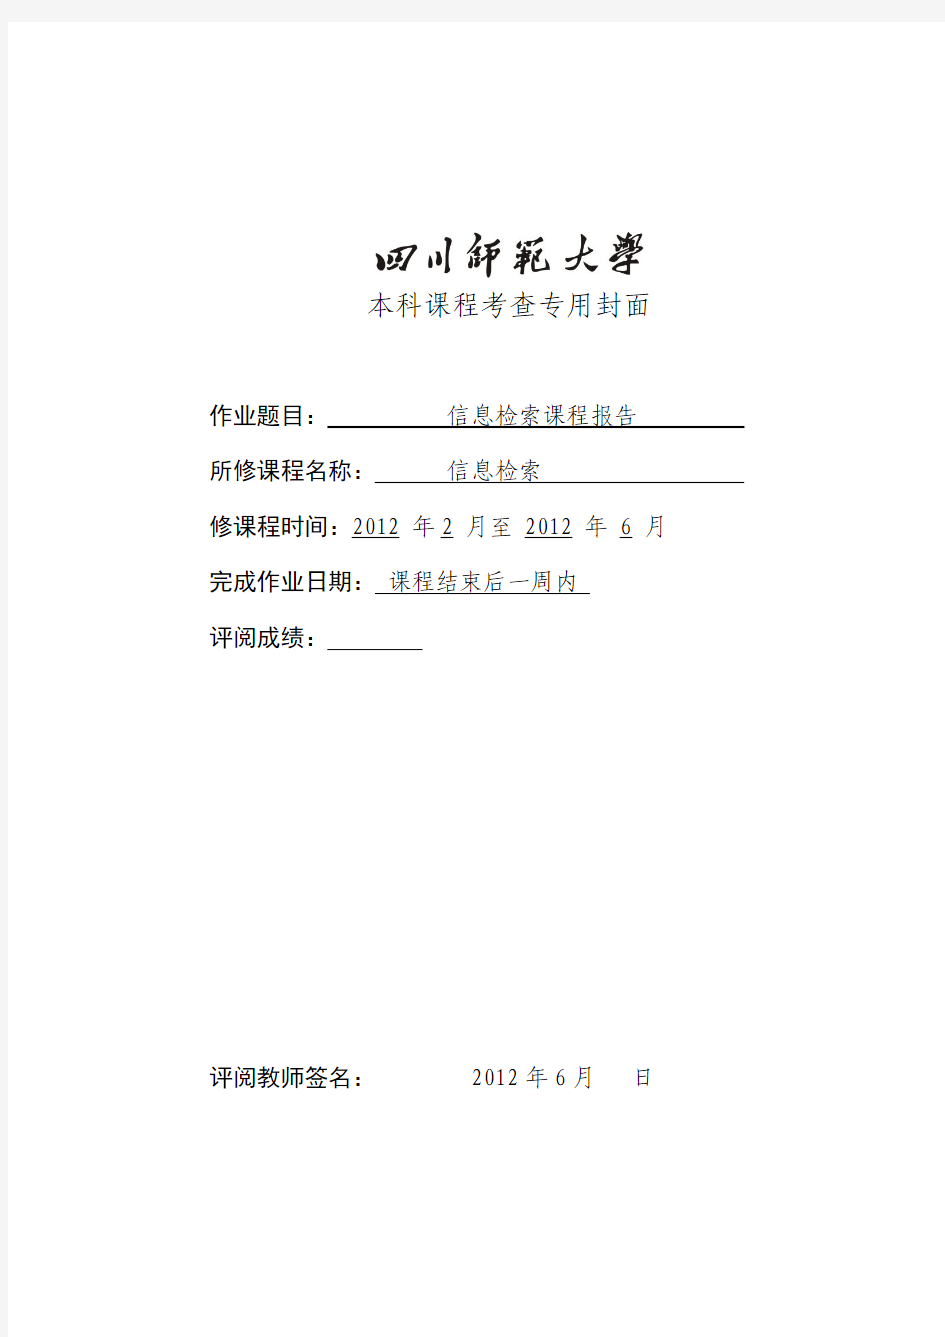 四川师范大学信息检索课程检索报告示例